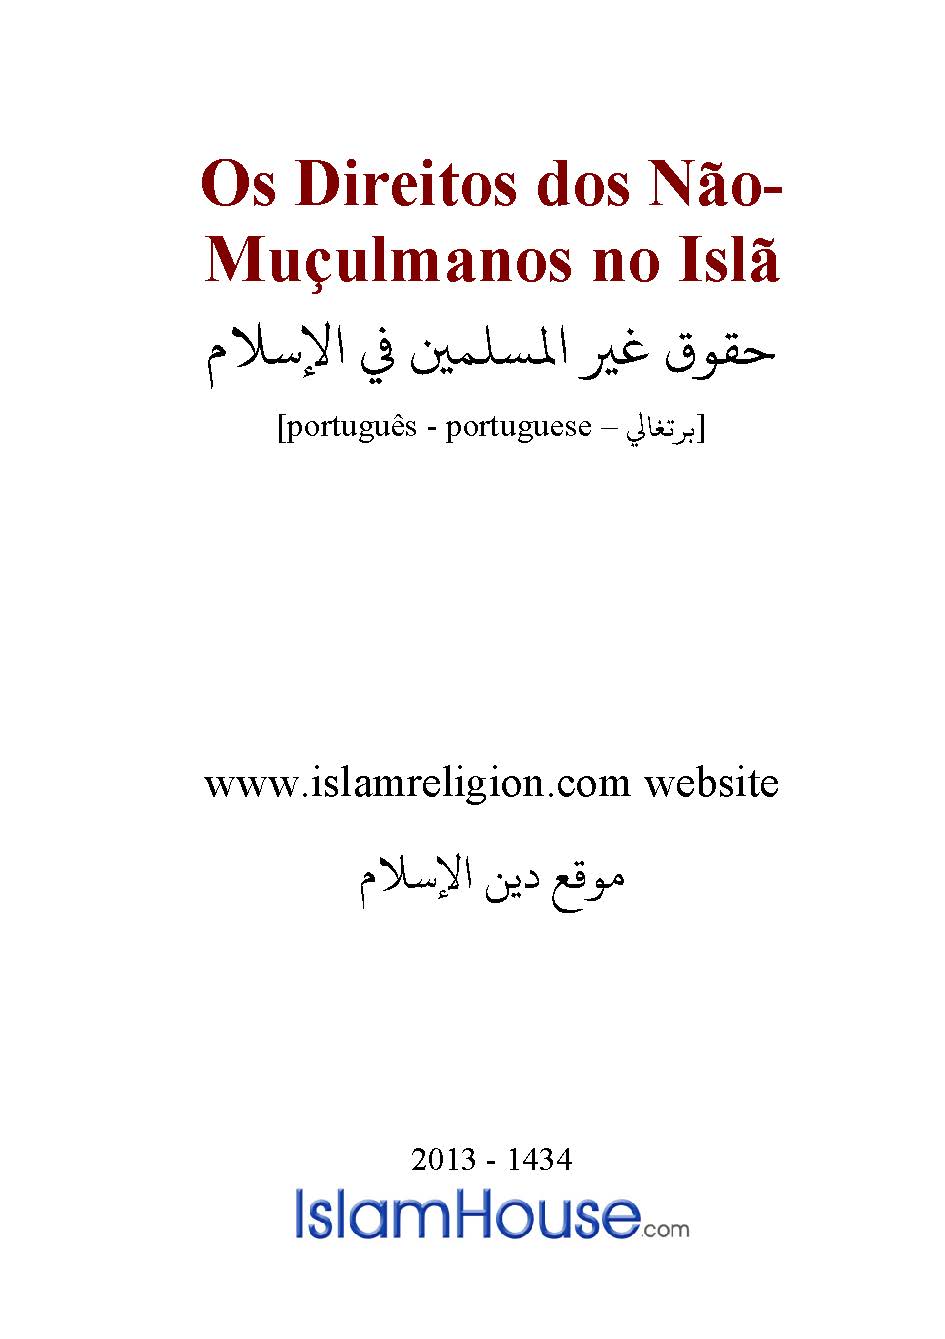 Os Direitos dos Nao Muçulmanos no Isla